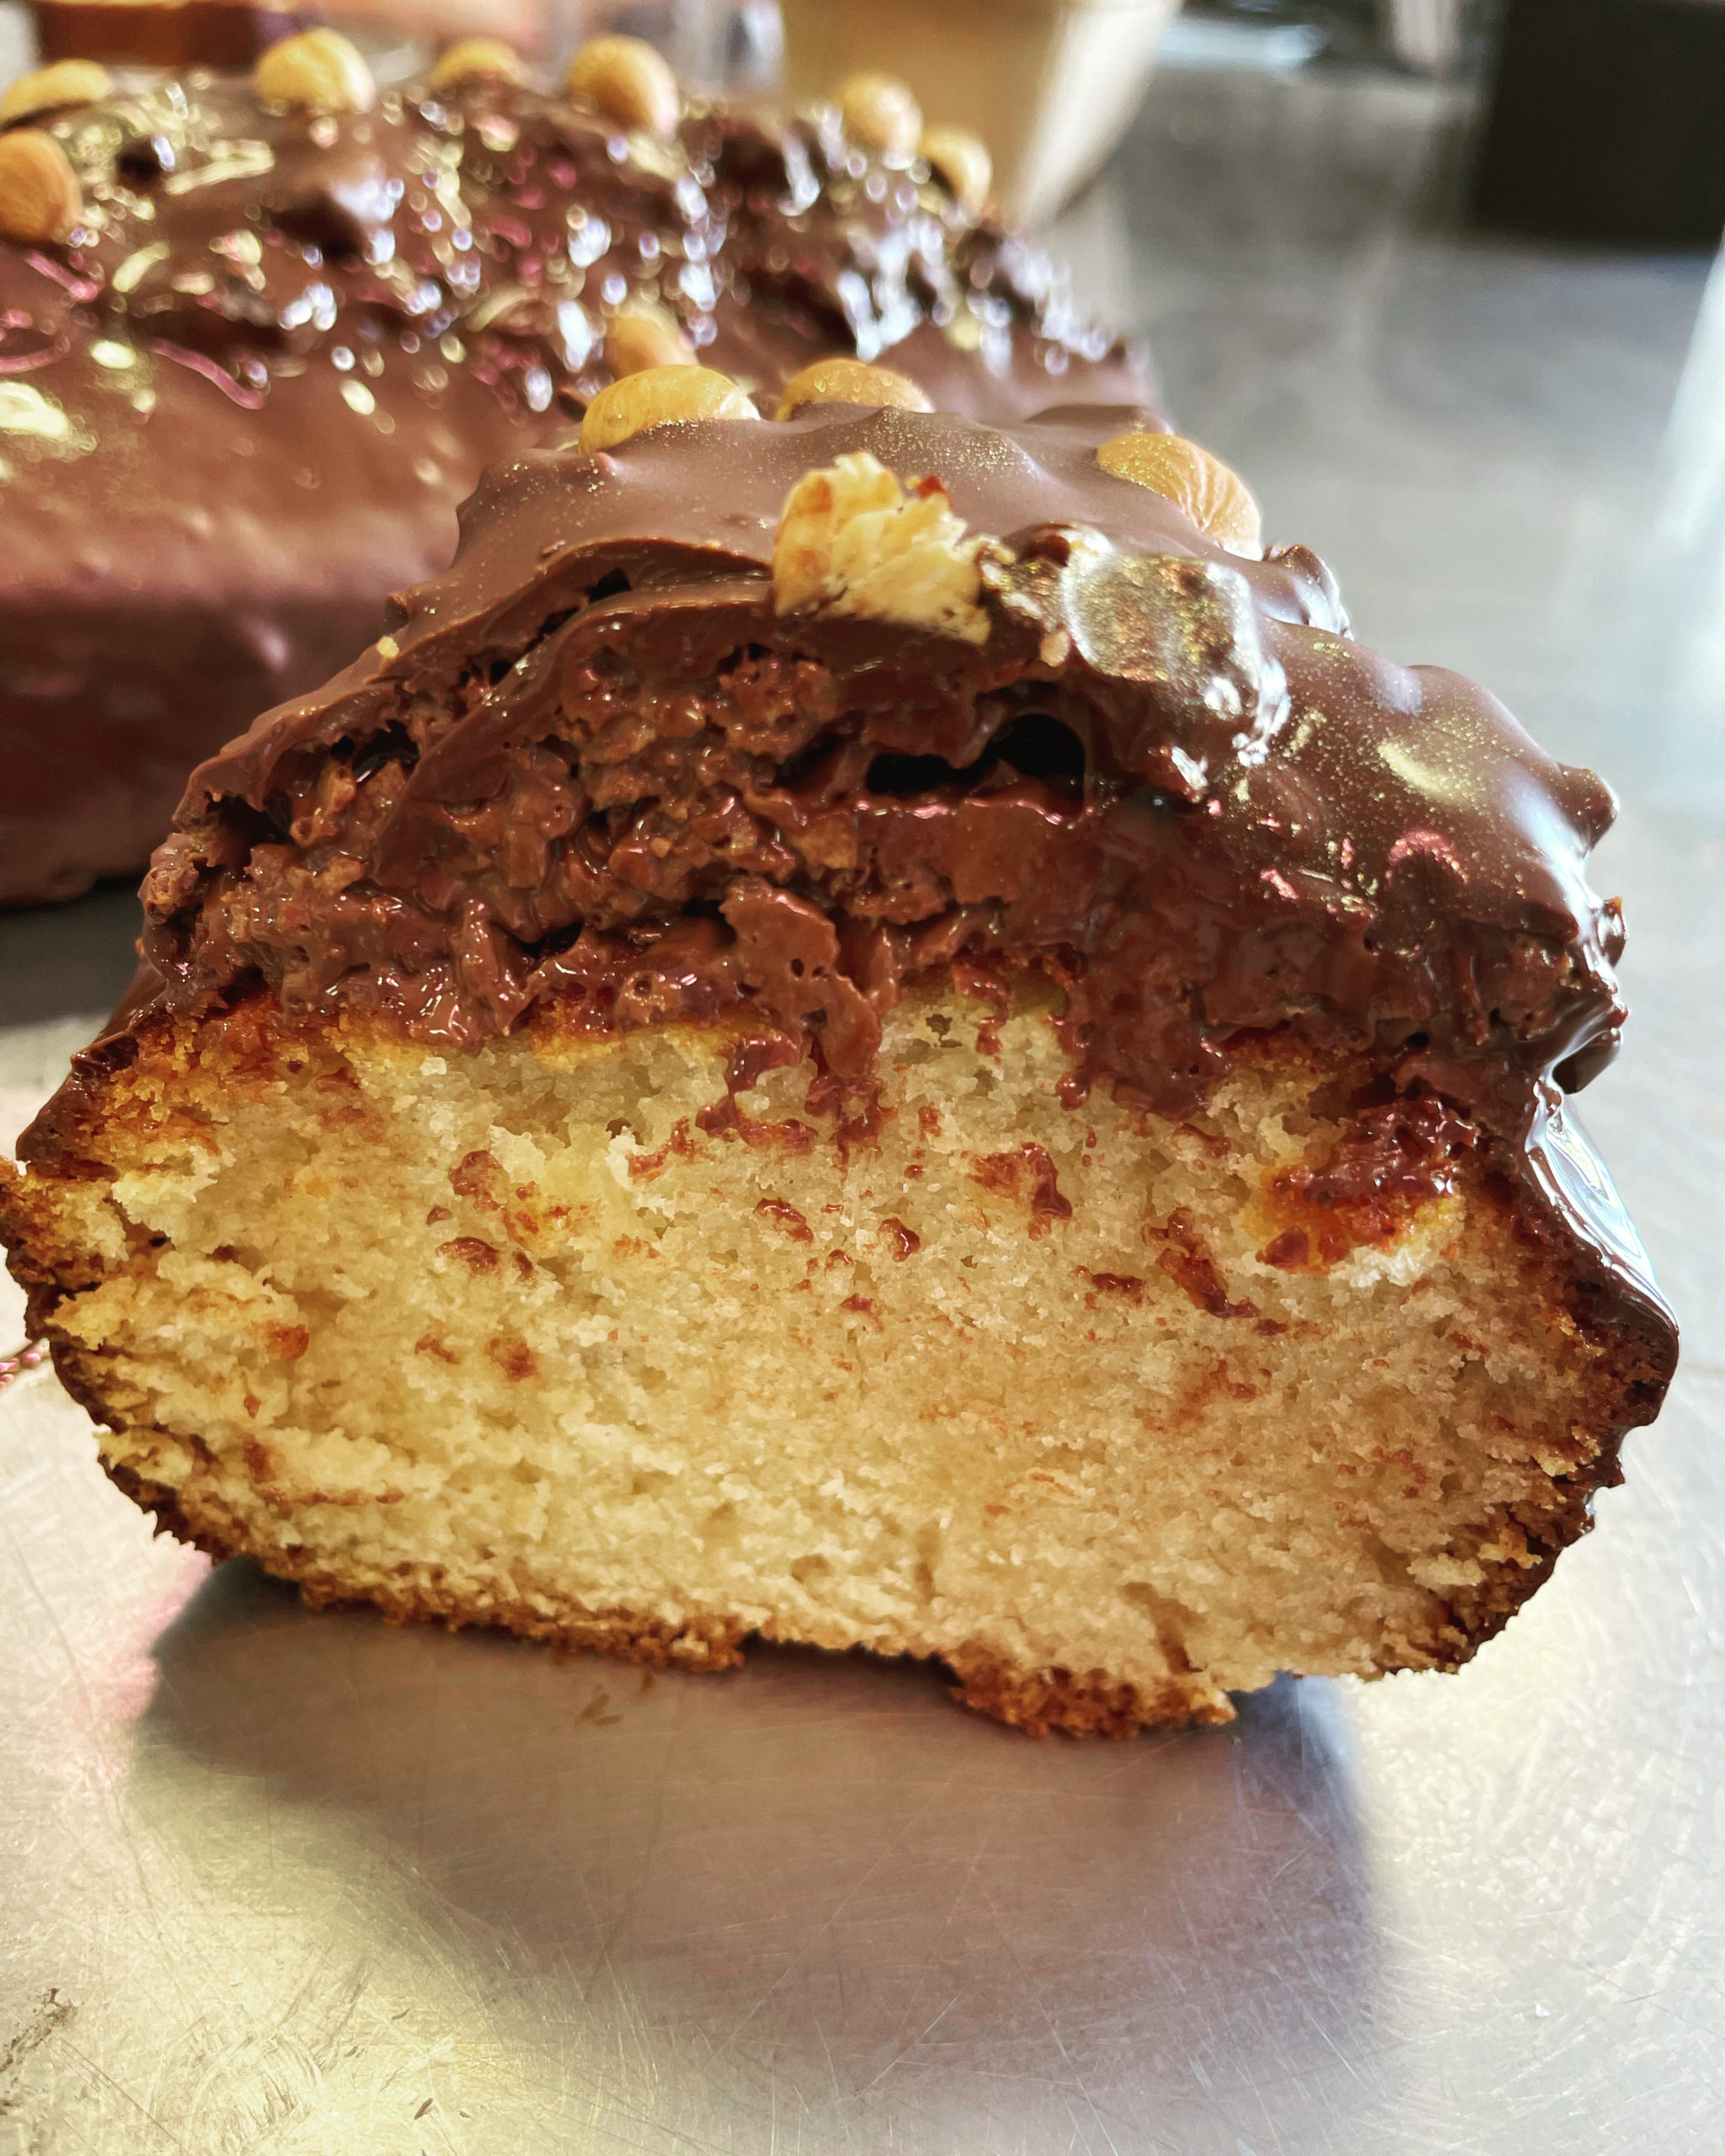 Cake de ouf , inspiration de C.Michalak, chocolat, praliné croustillant, pistache,citron,